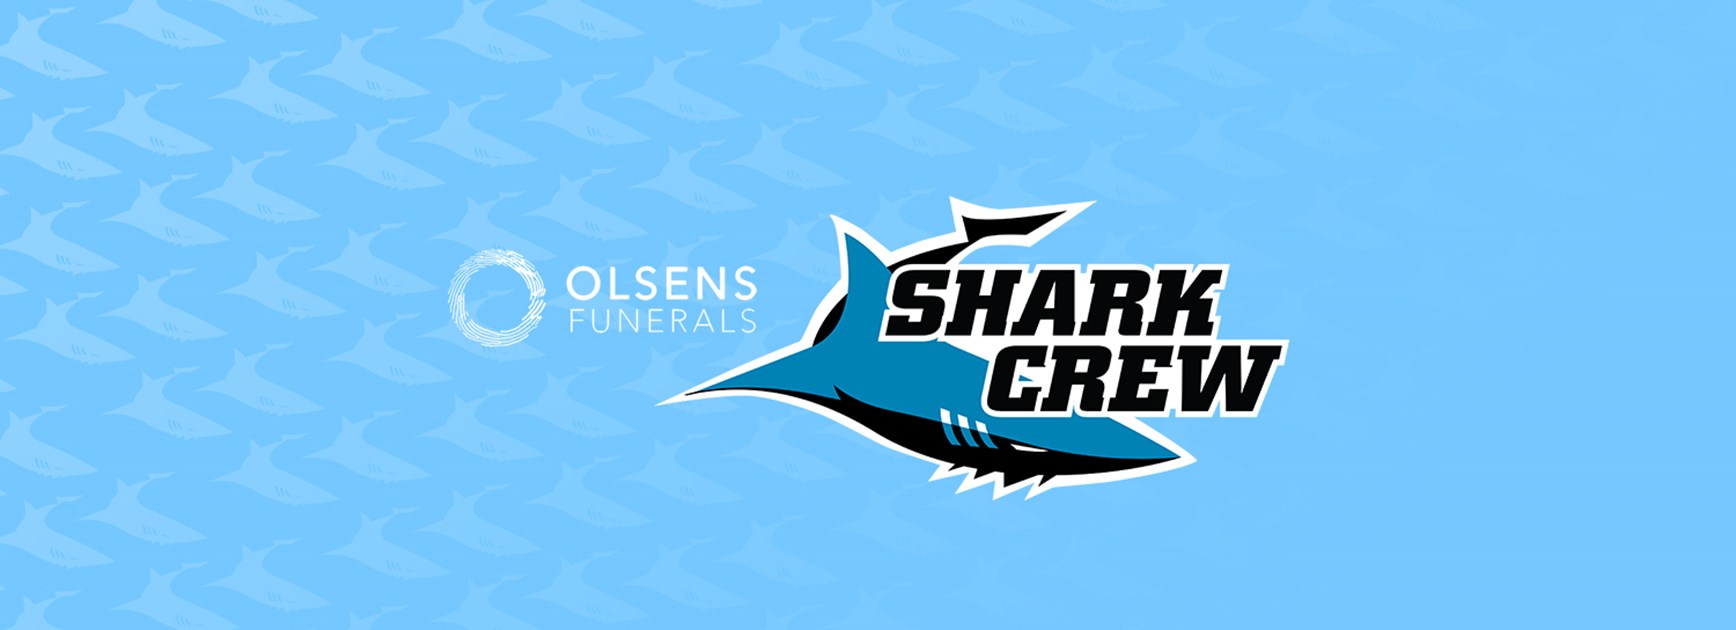 Join the Olsens Shark Crew in 2019